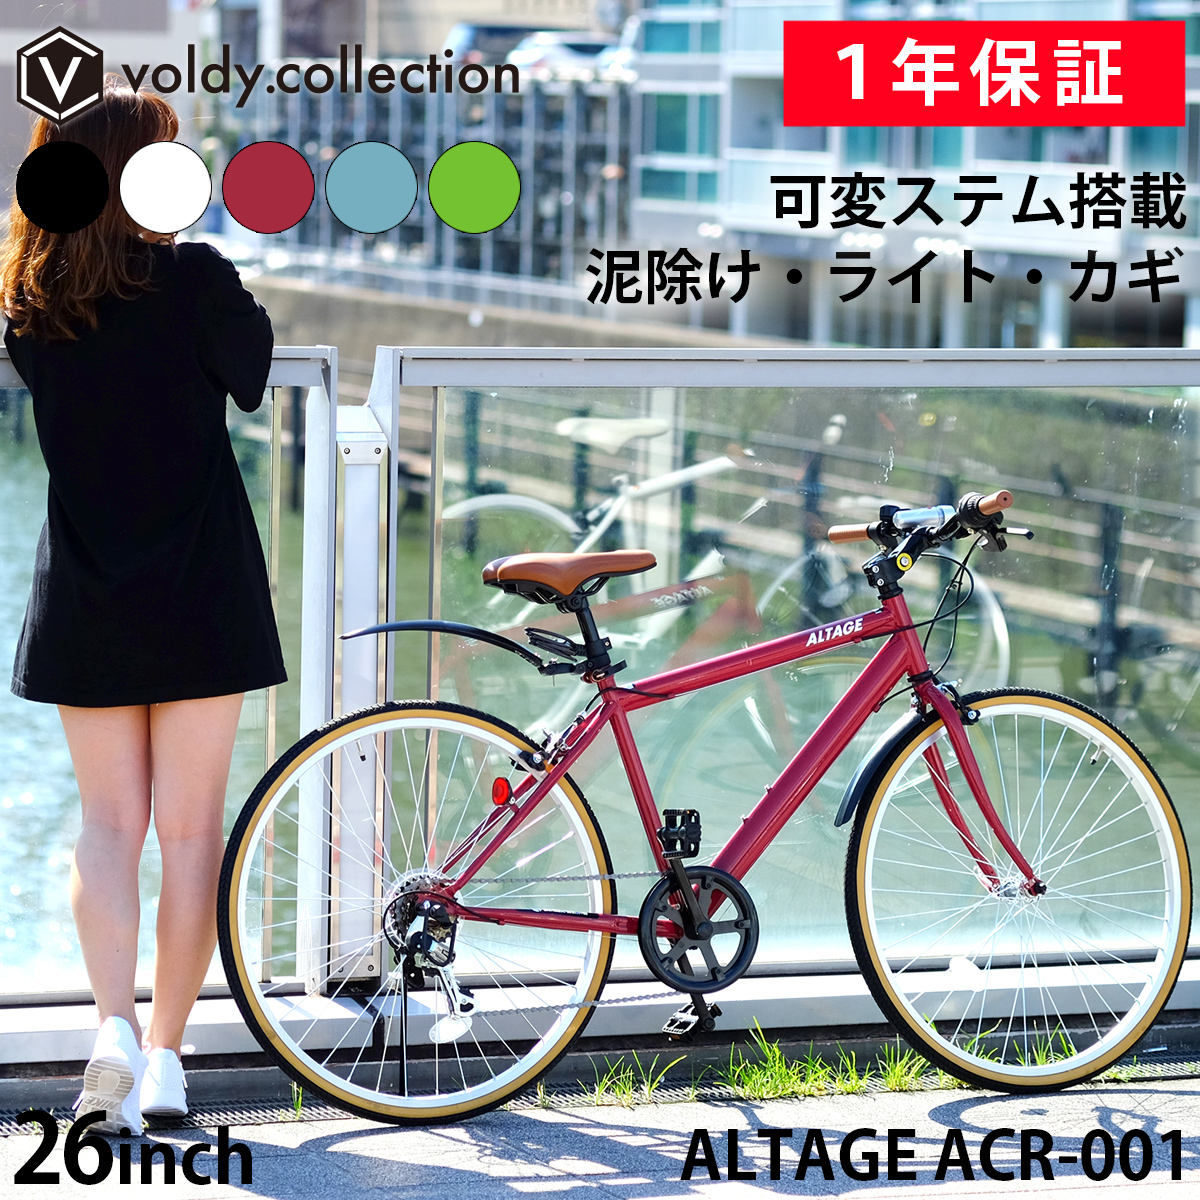 クロスバイク 泥除け LEDライト カギ 可変ステム装備 自転車 26インチ シマノ6段変速 軽量 初心者 女性 通勤 通学 アルテージ ALTAGE  ACR-001